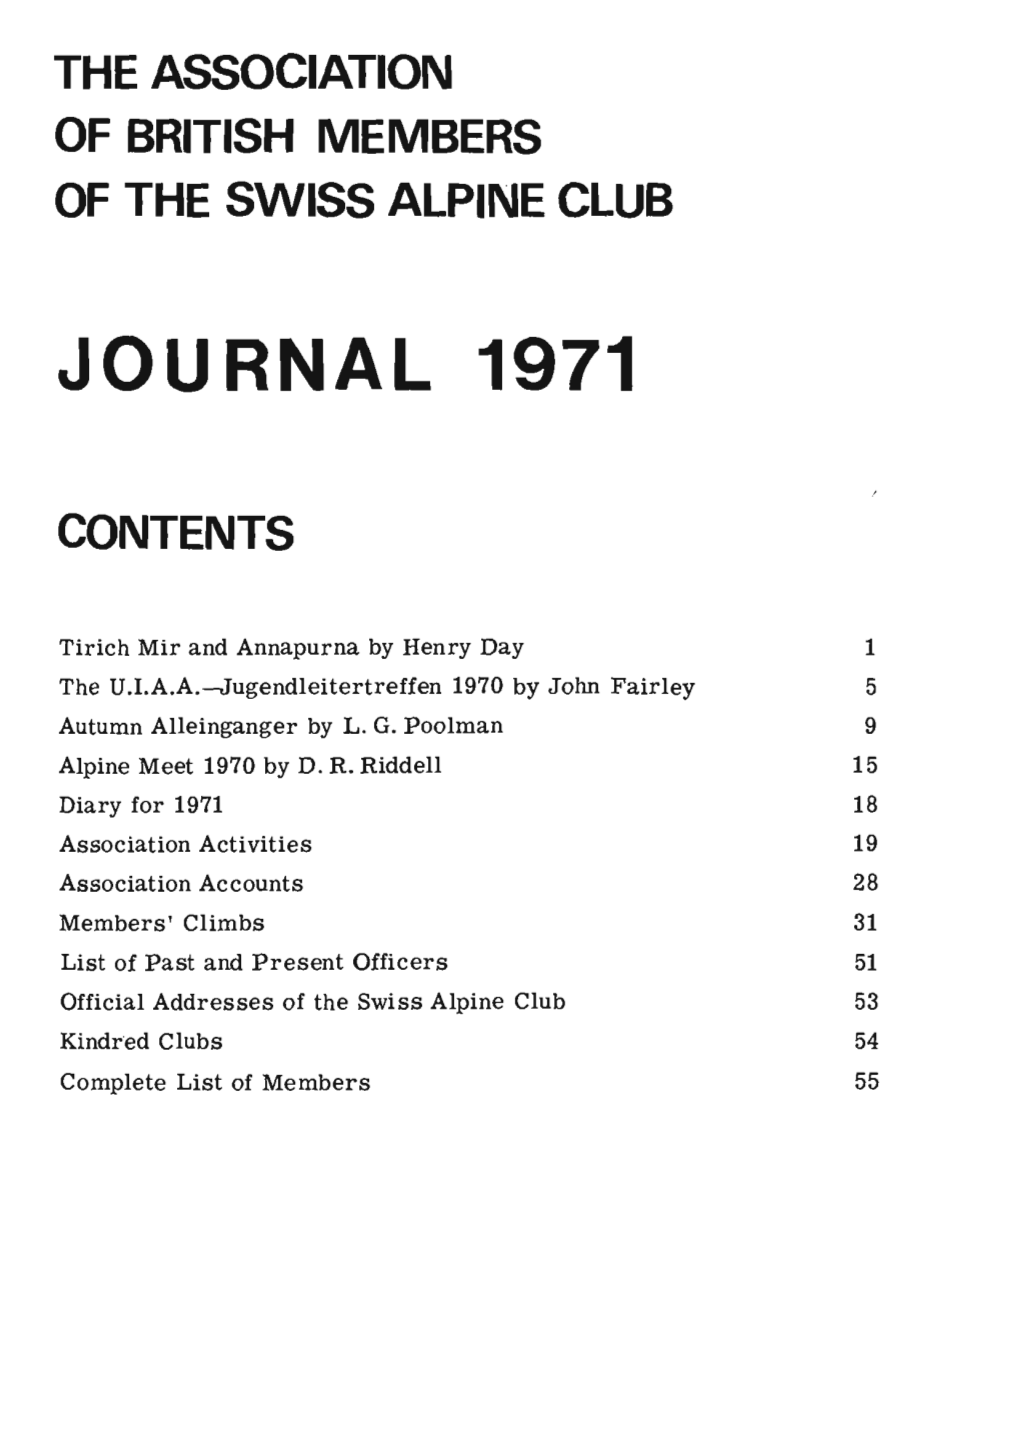 Journal 1971